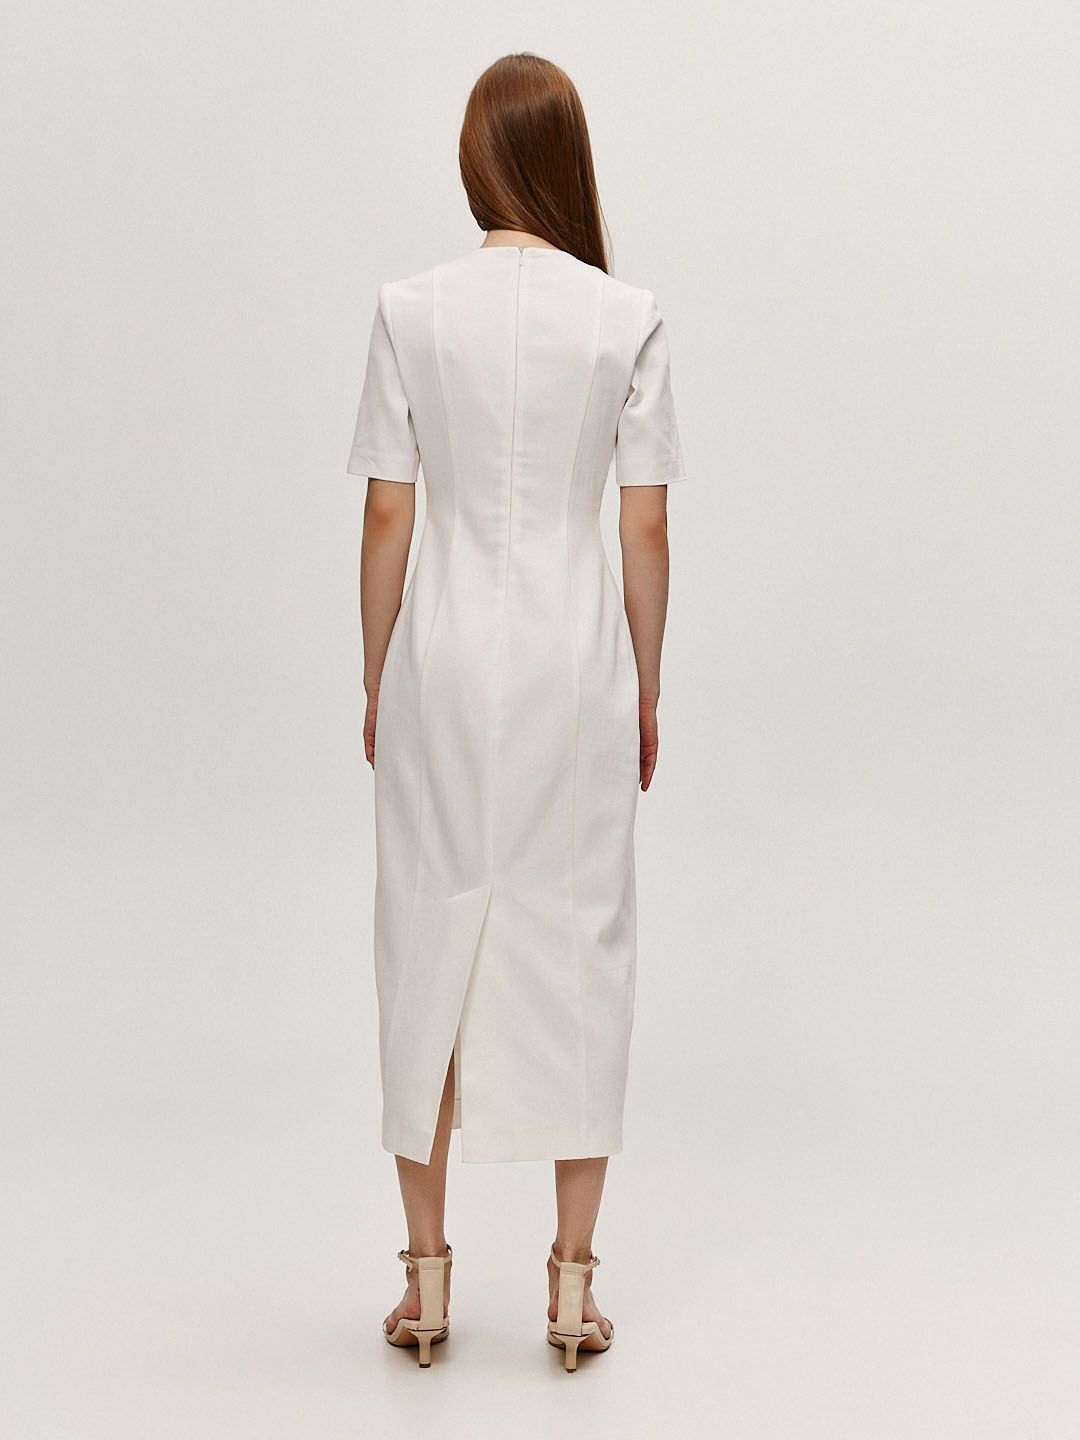 Платье футляр с коротким рукавом белое, купить платье футляр с коротким рукавом белое 